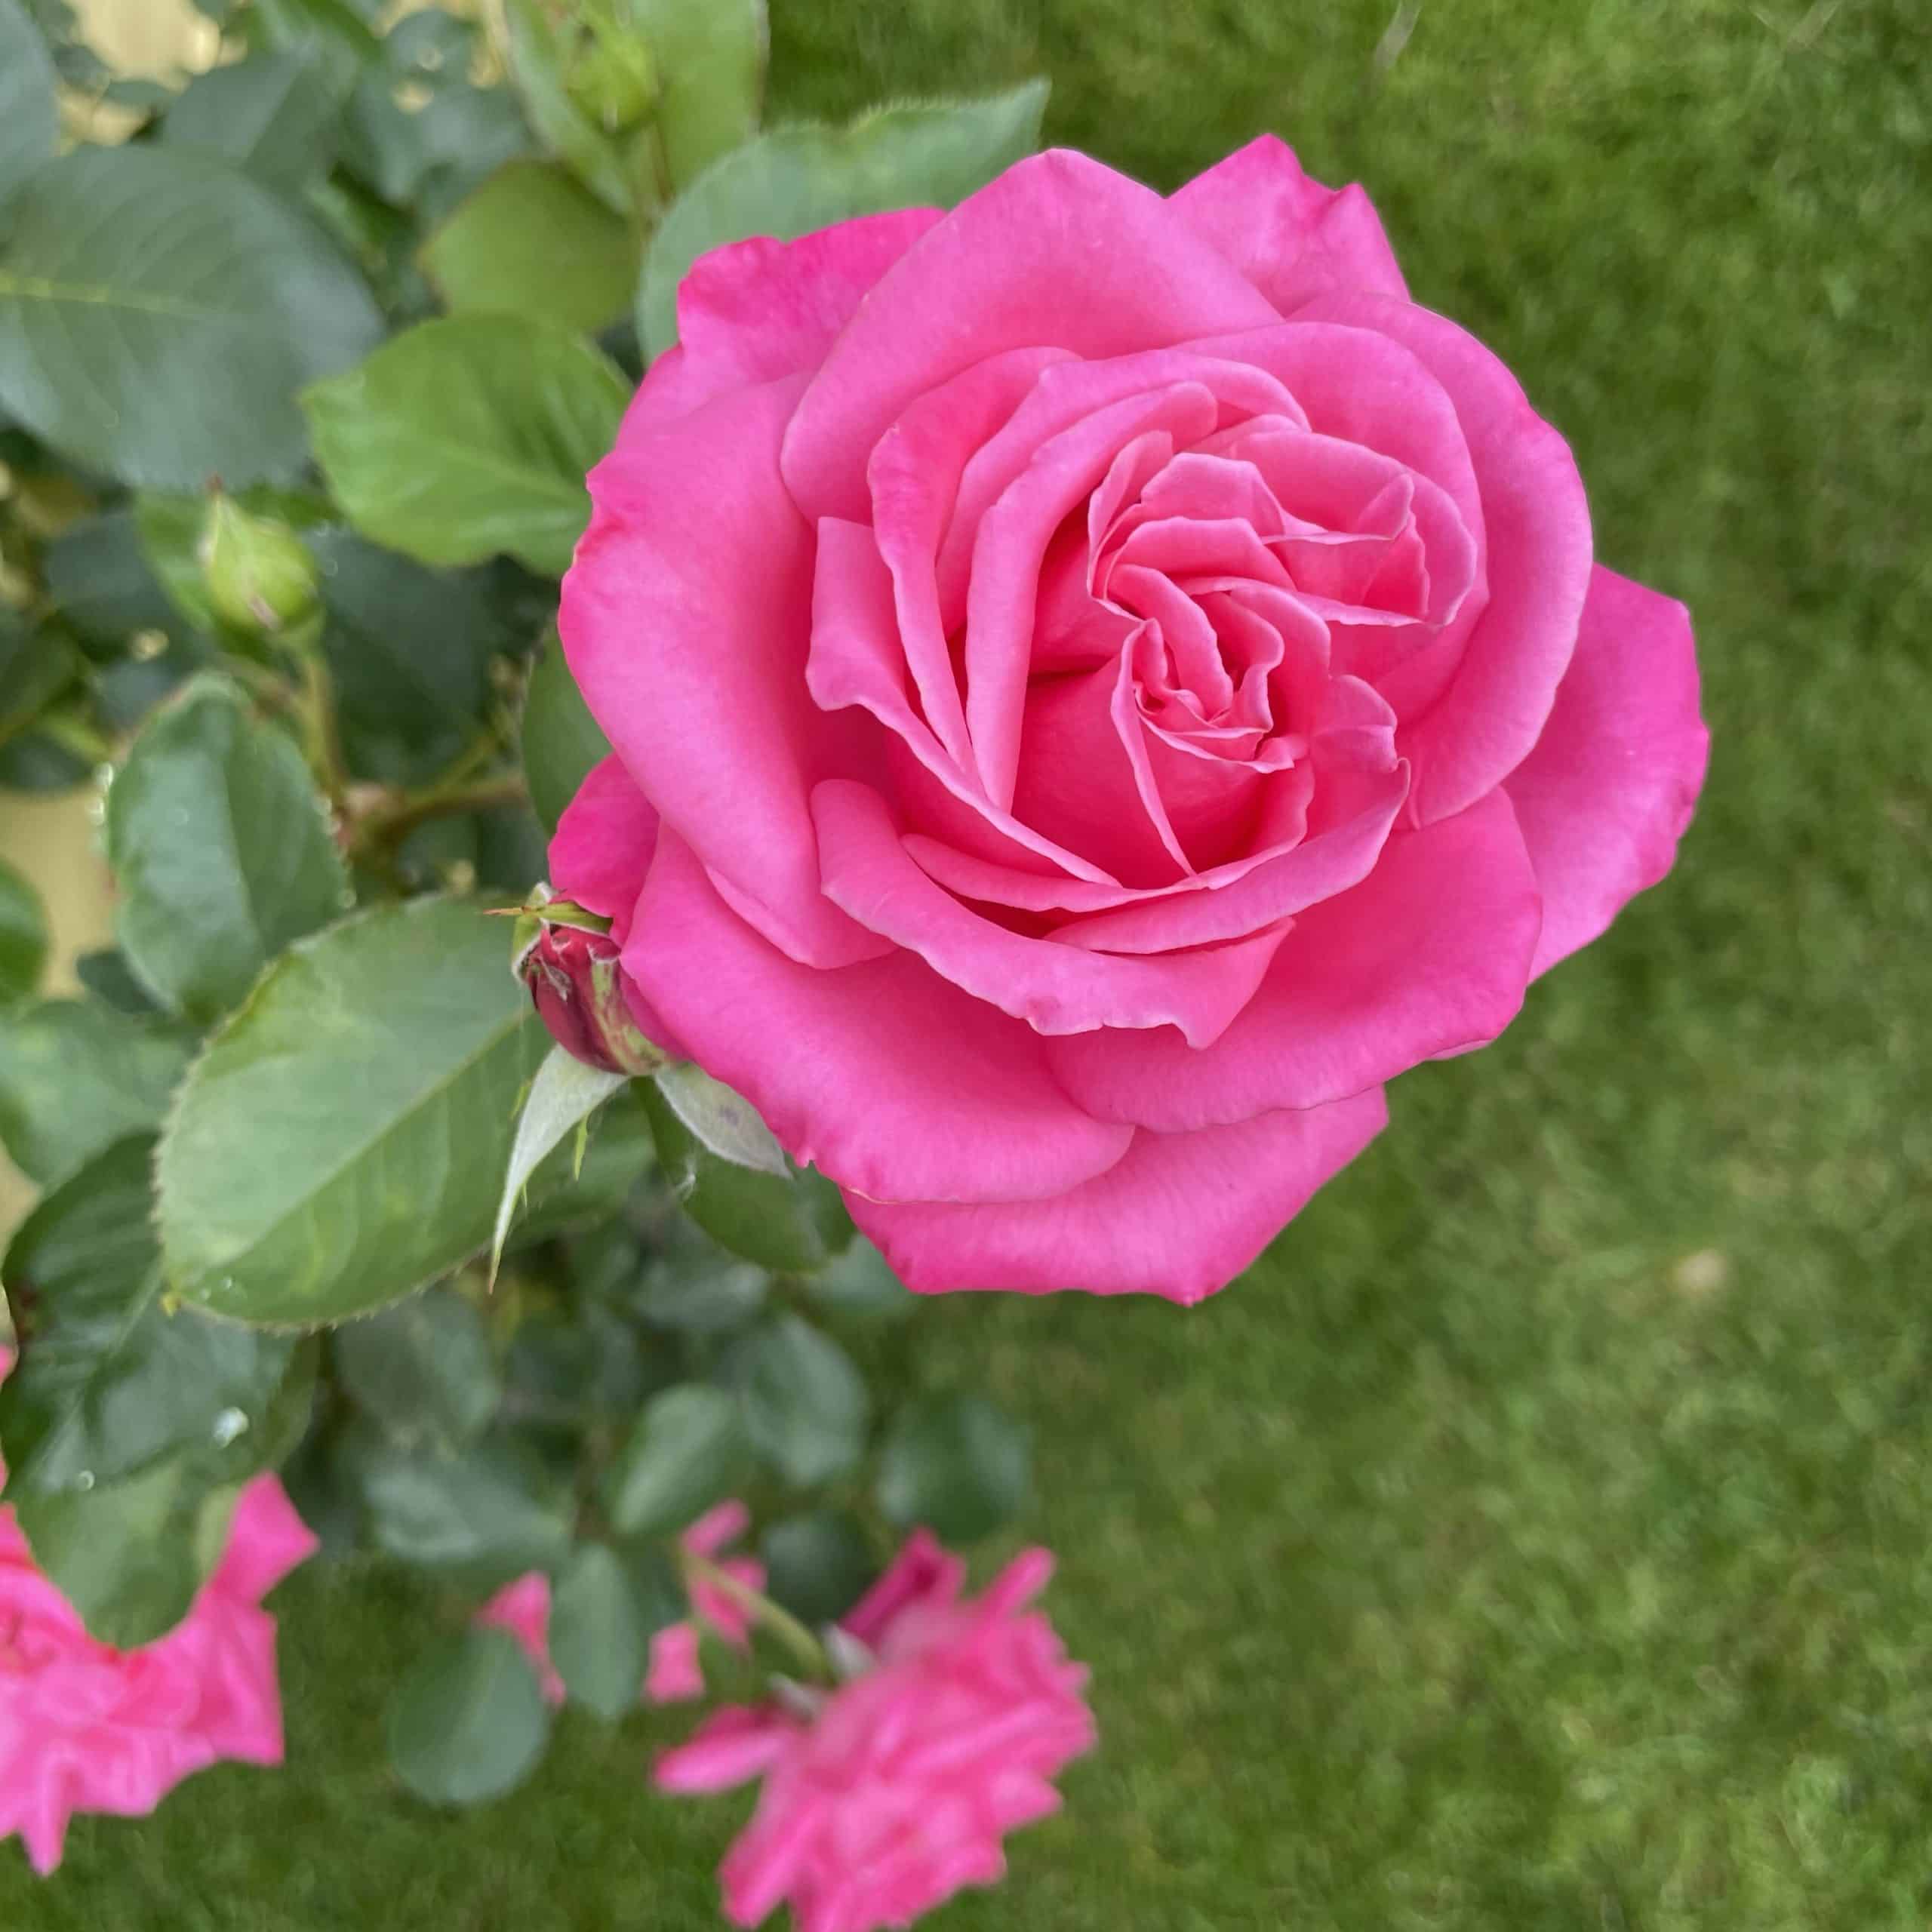 pinkfarbene Rose